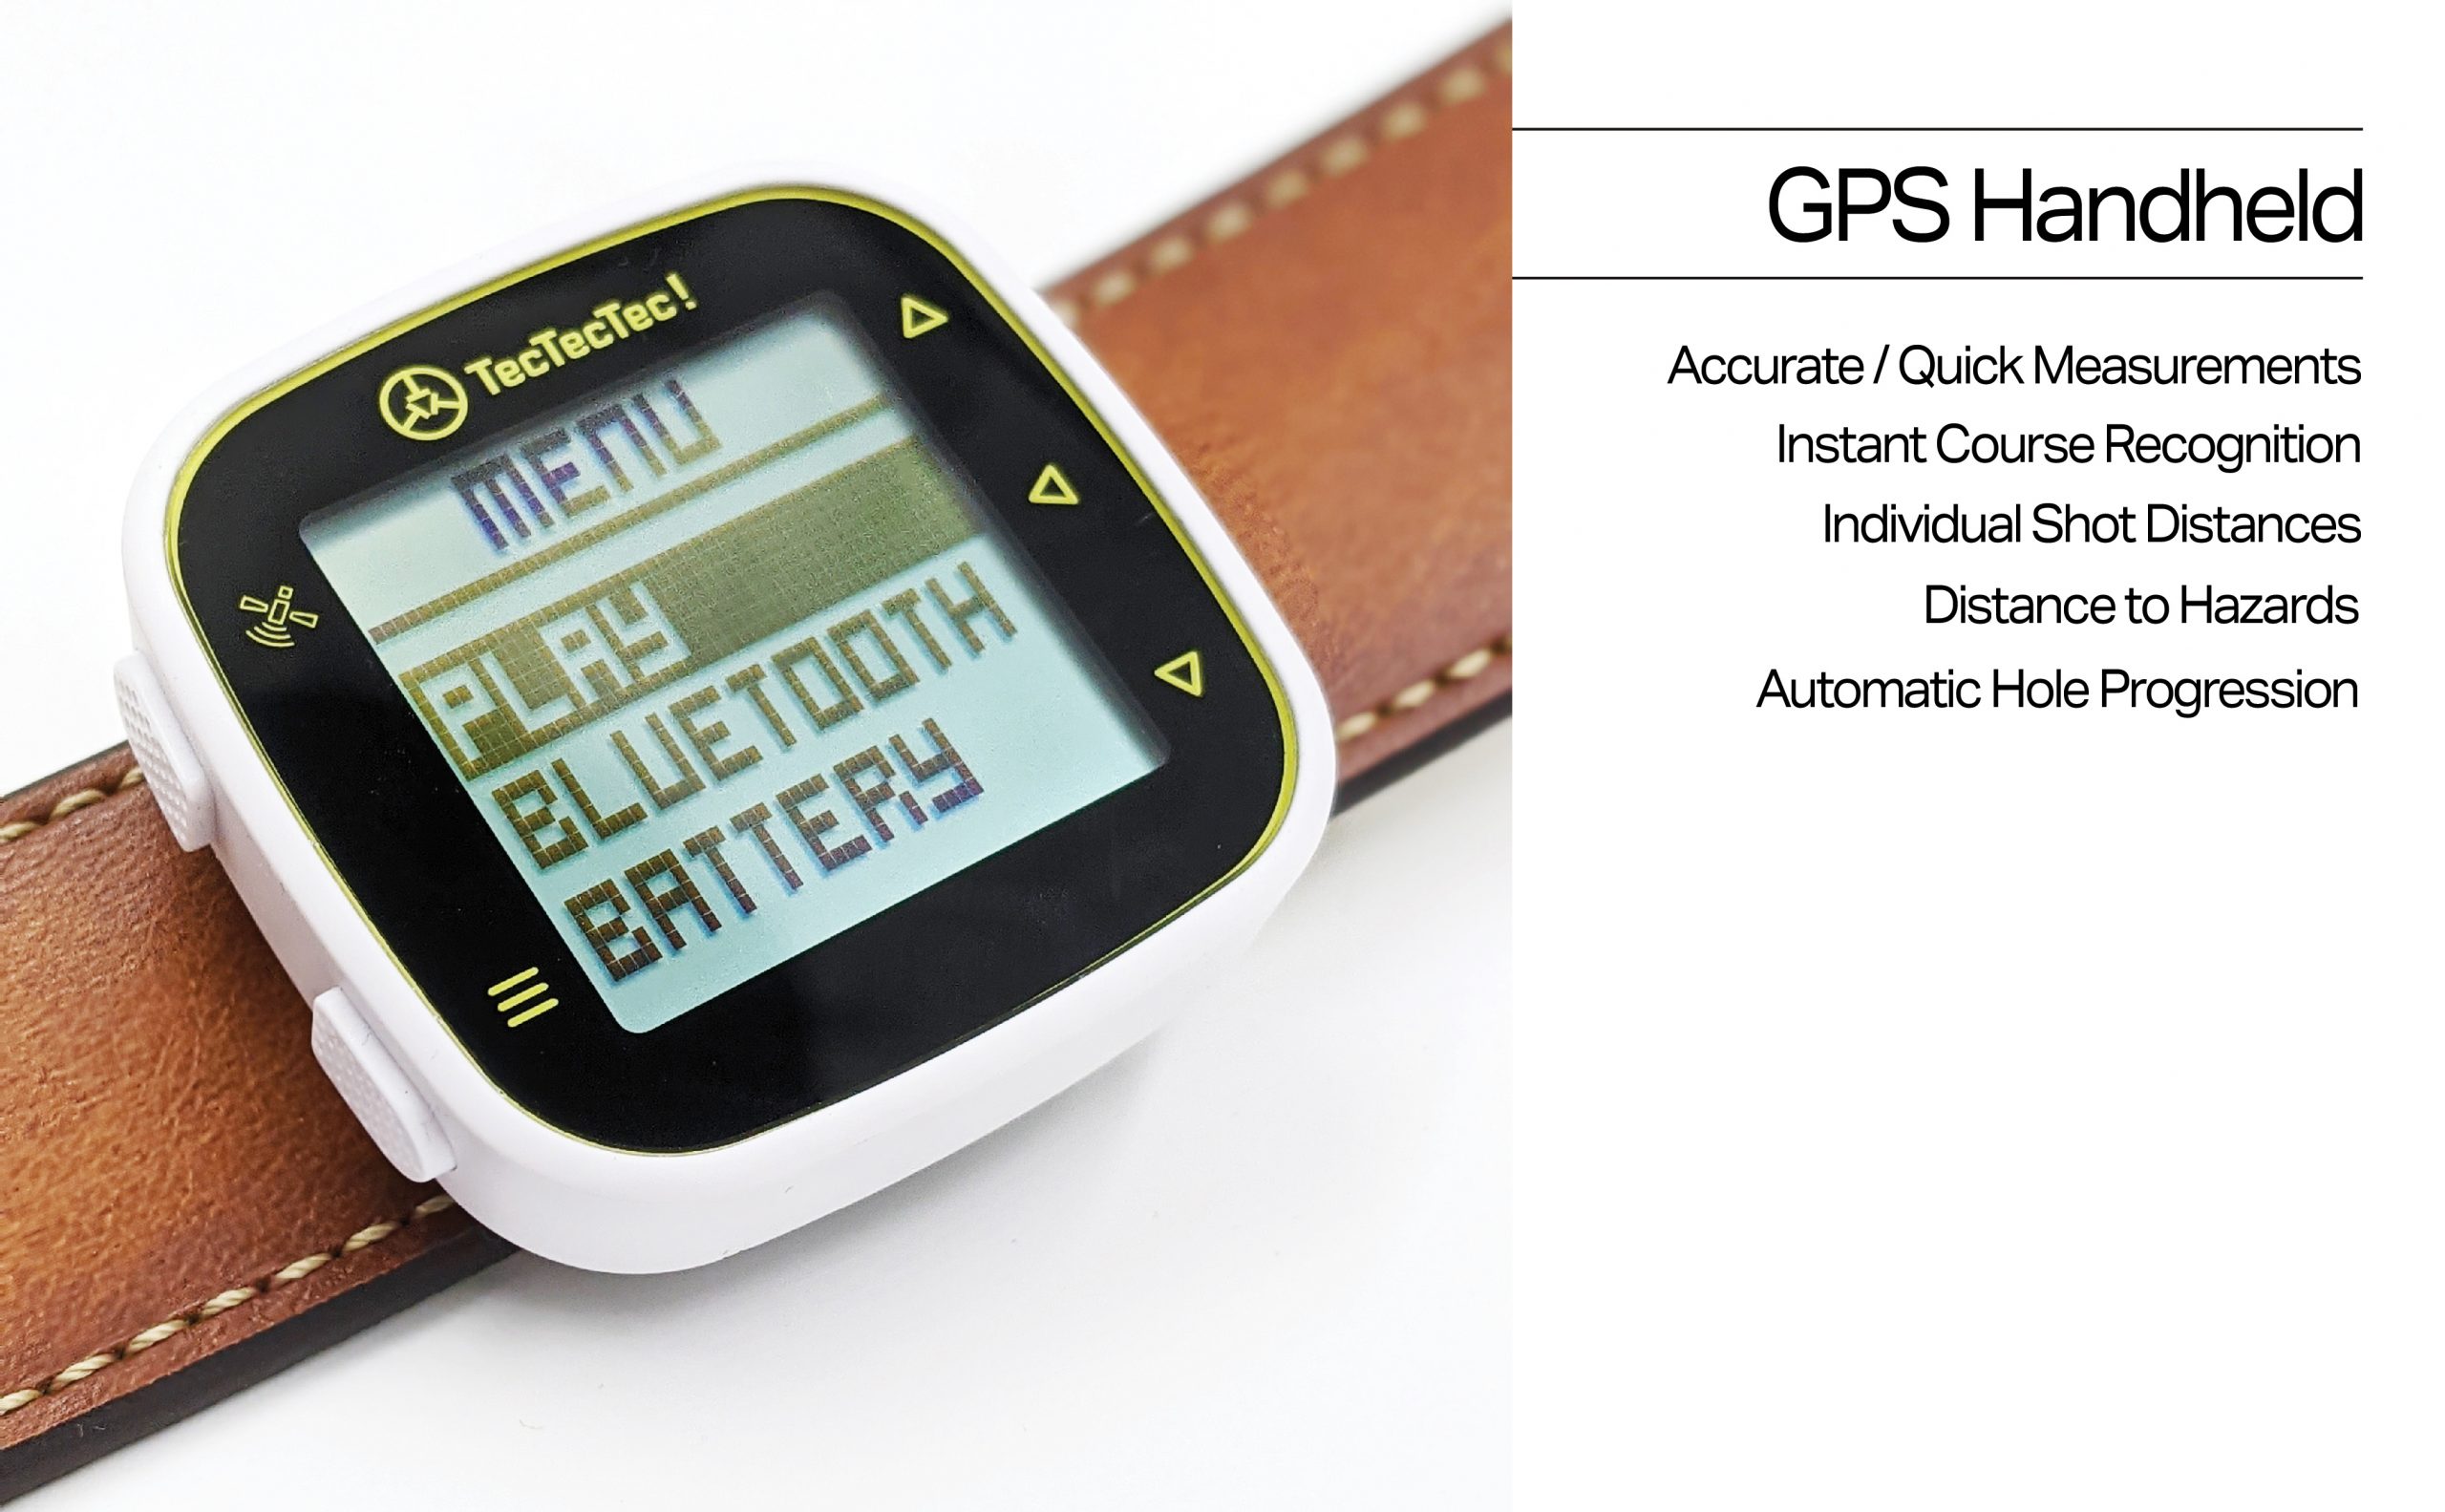 ULT-G Ultra-Light Golf GPS Handheld